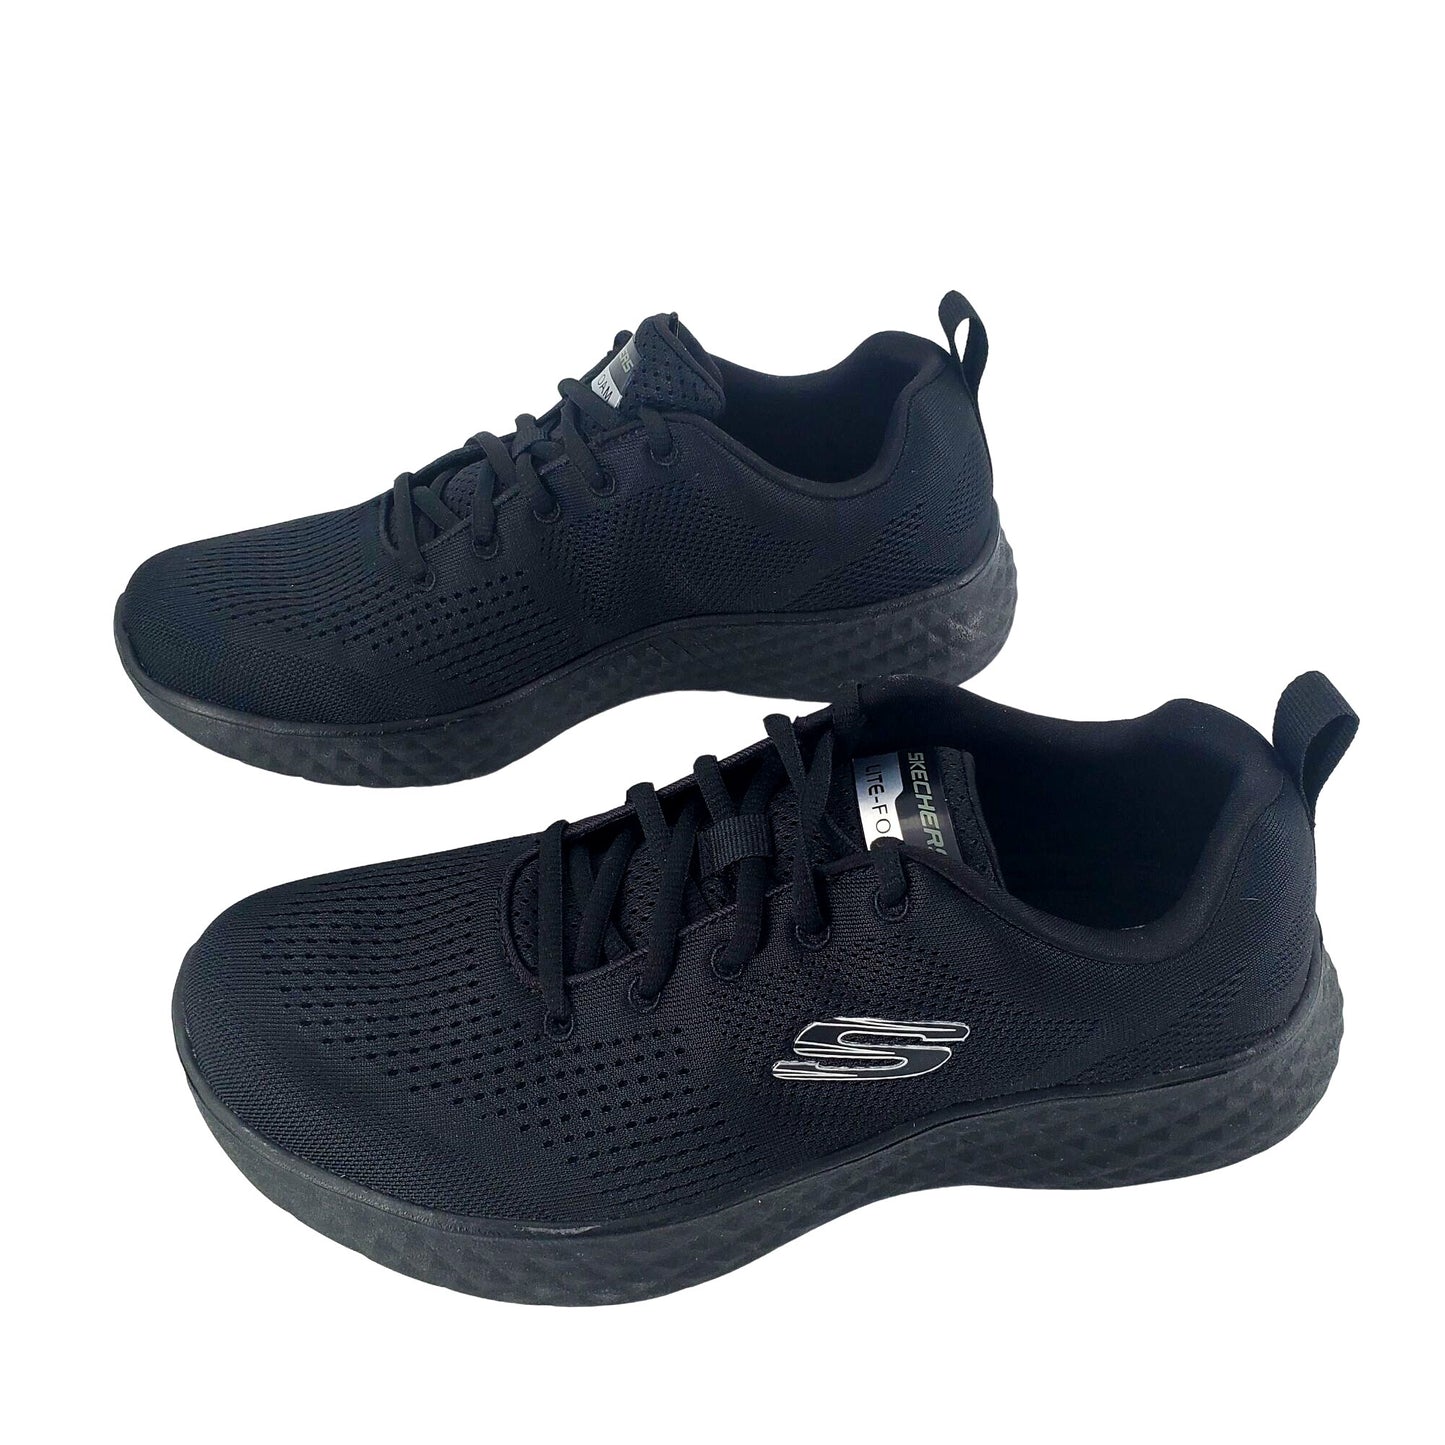 SKECHERS Sneakers Men's Lite Foam Activewear Air Cooled Athletic Shoes Black